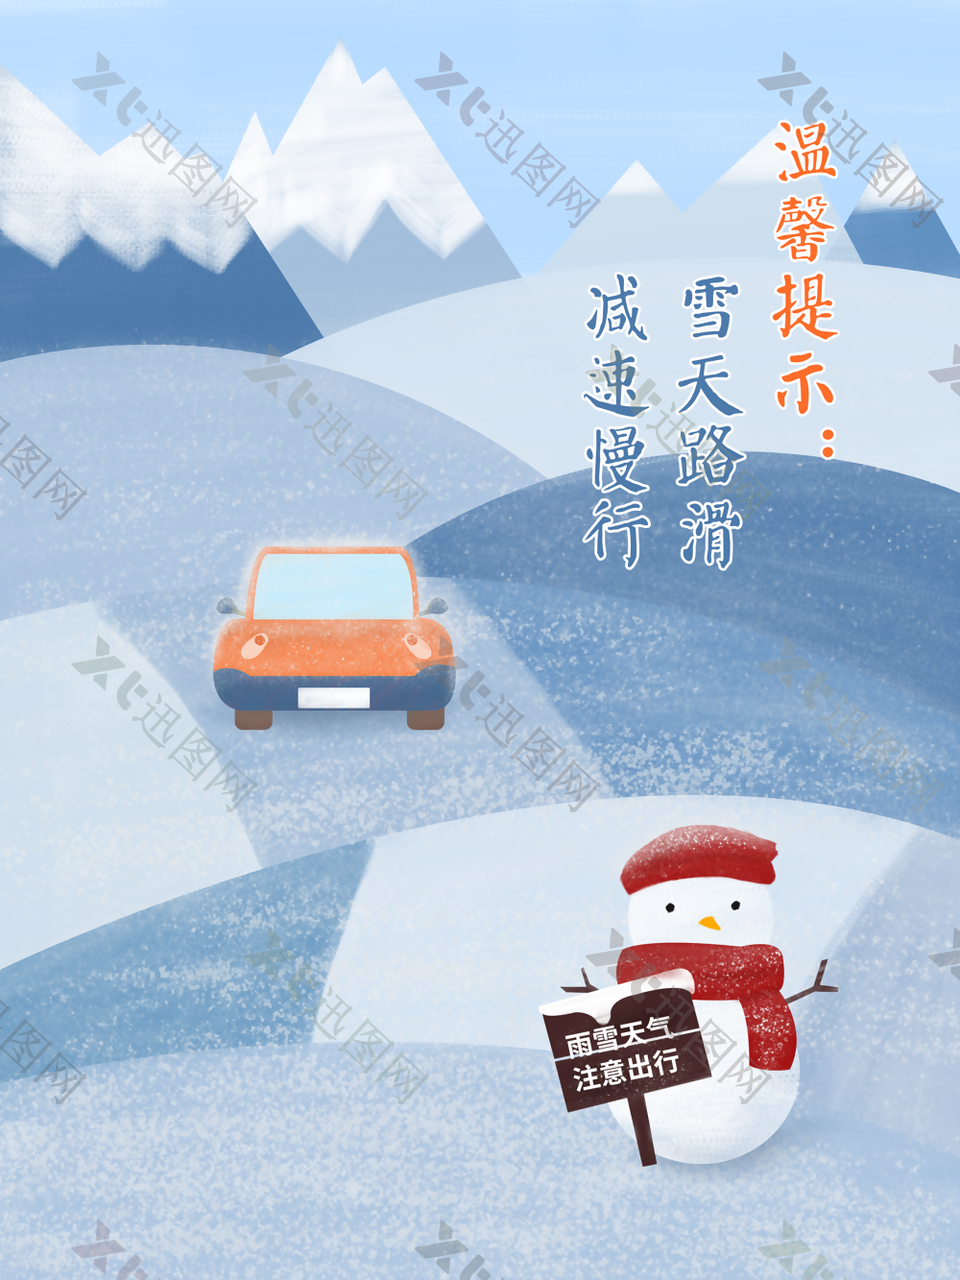 清新手绘雪天路滑减速慢行公益海报设计